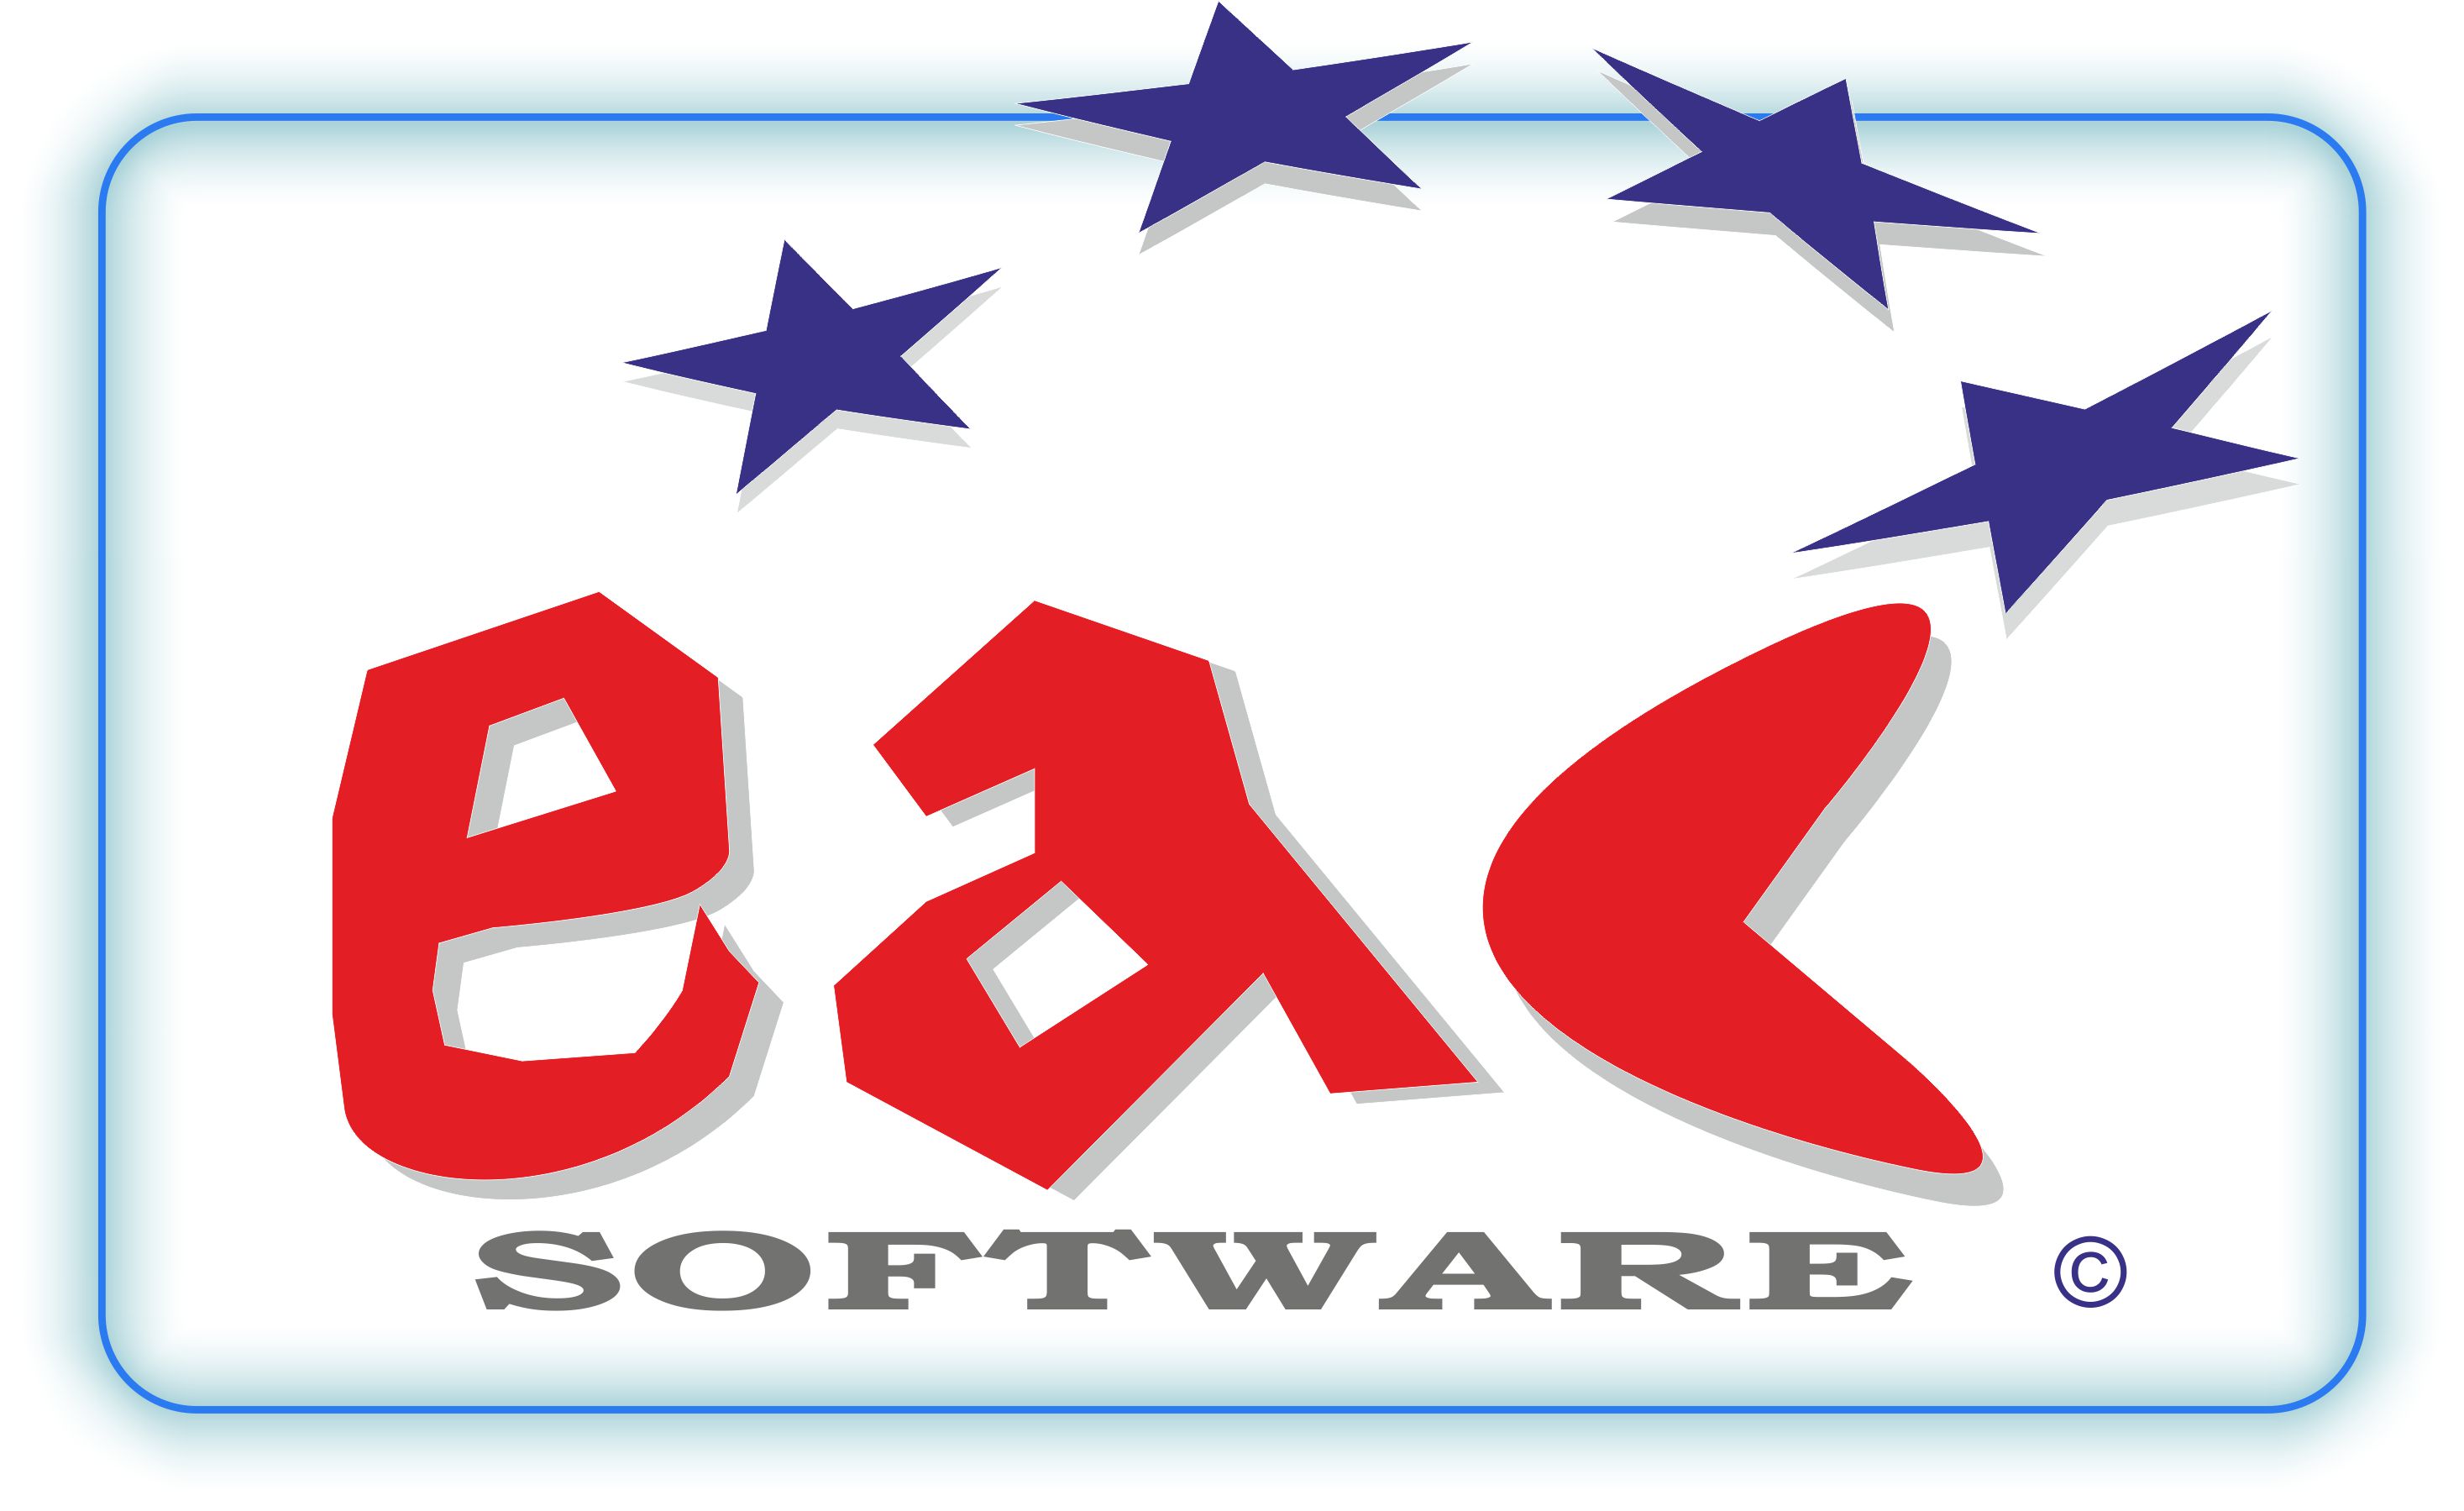 Eac Software anuncia su nueva versión de Eac CatWebPro